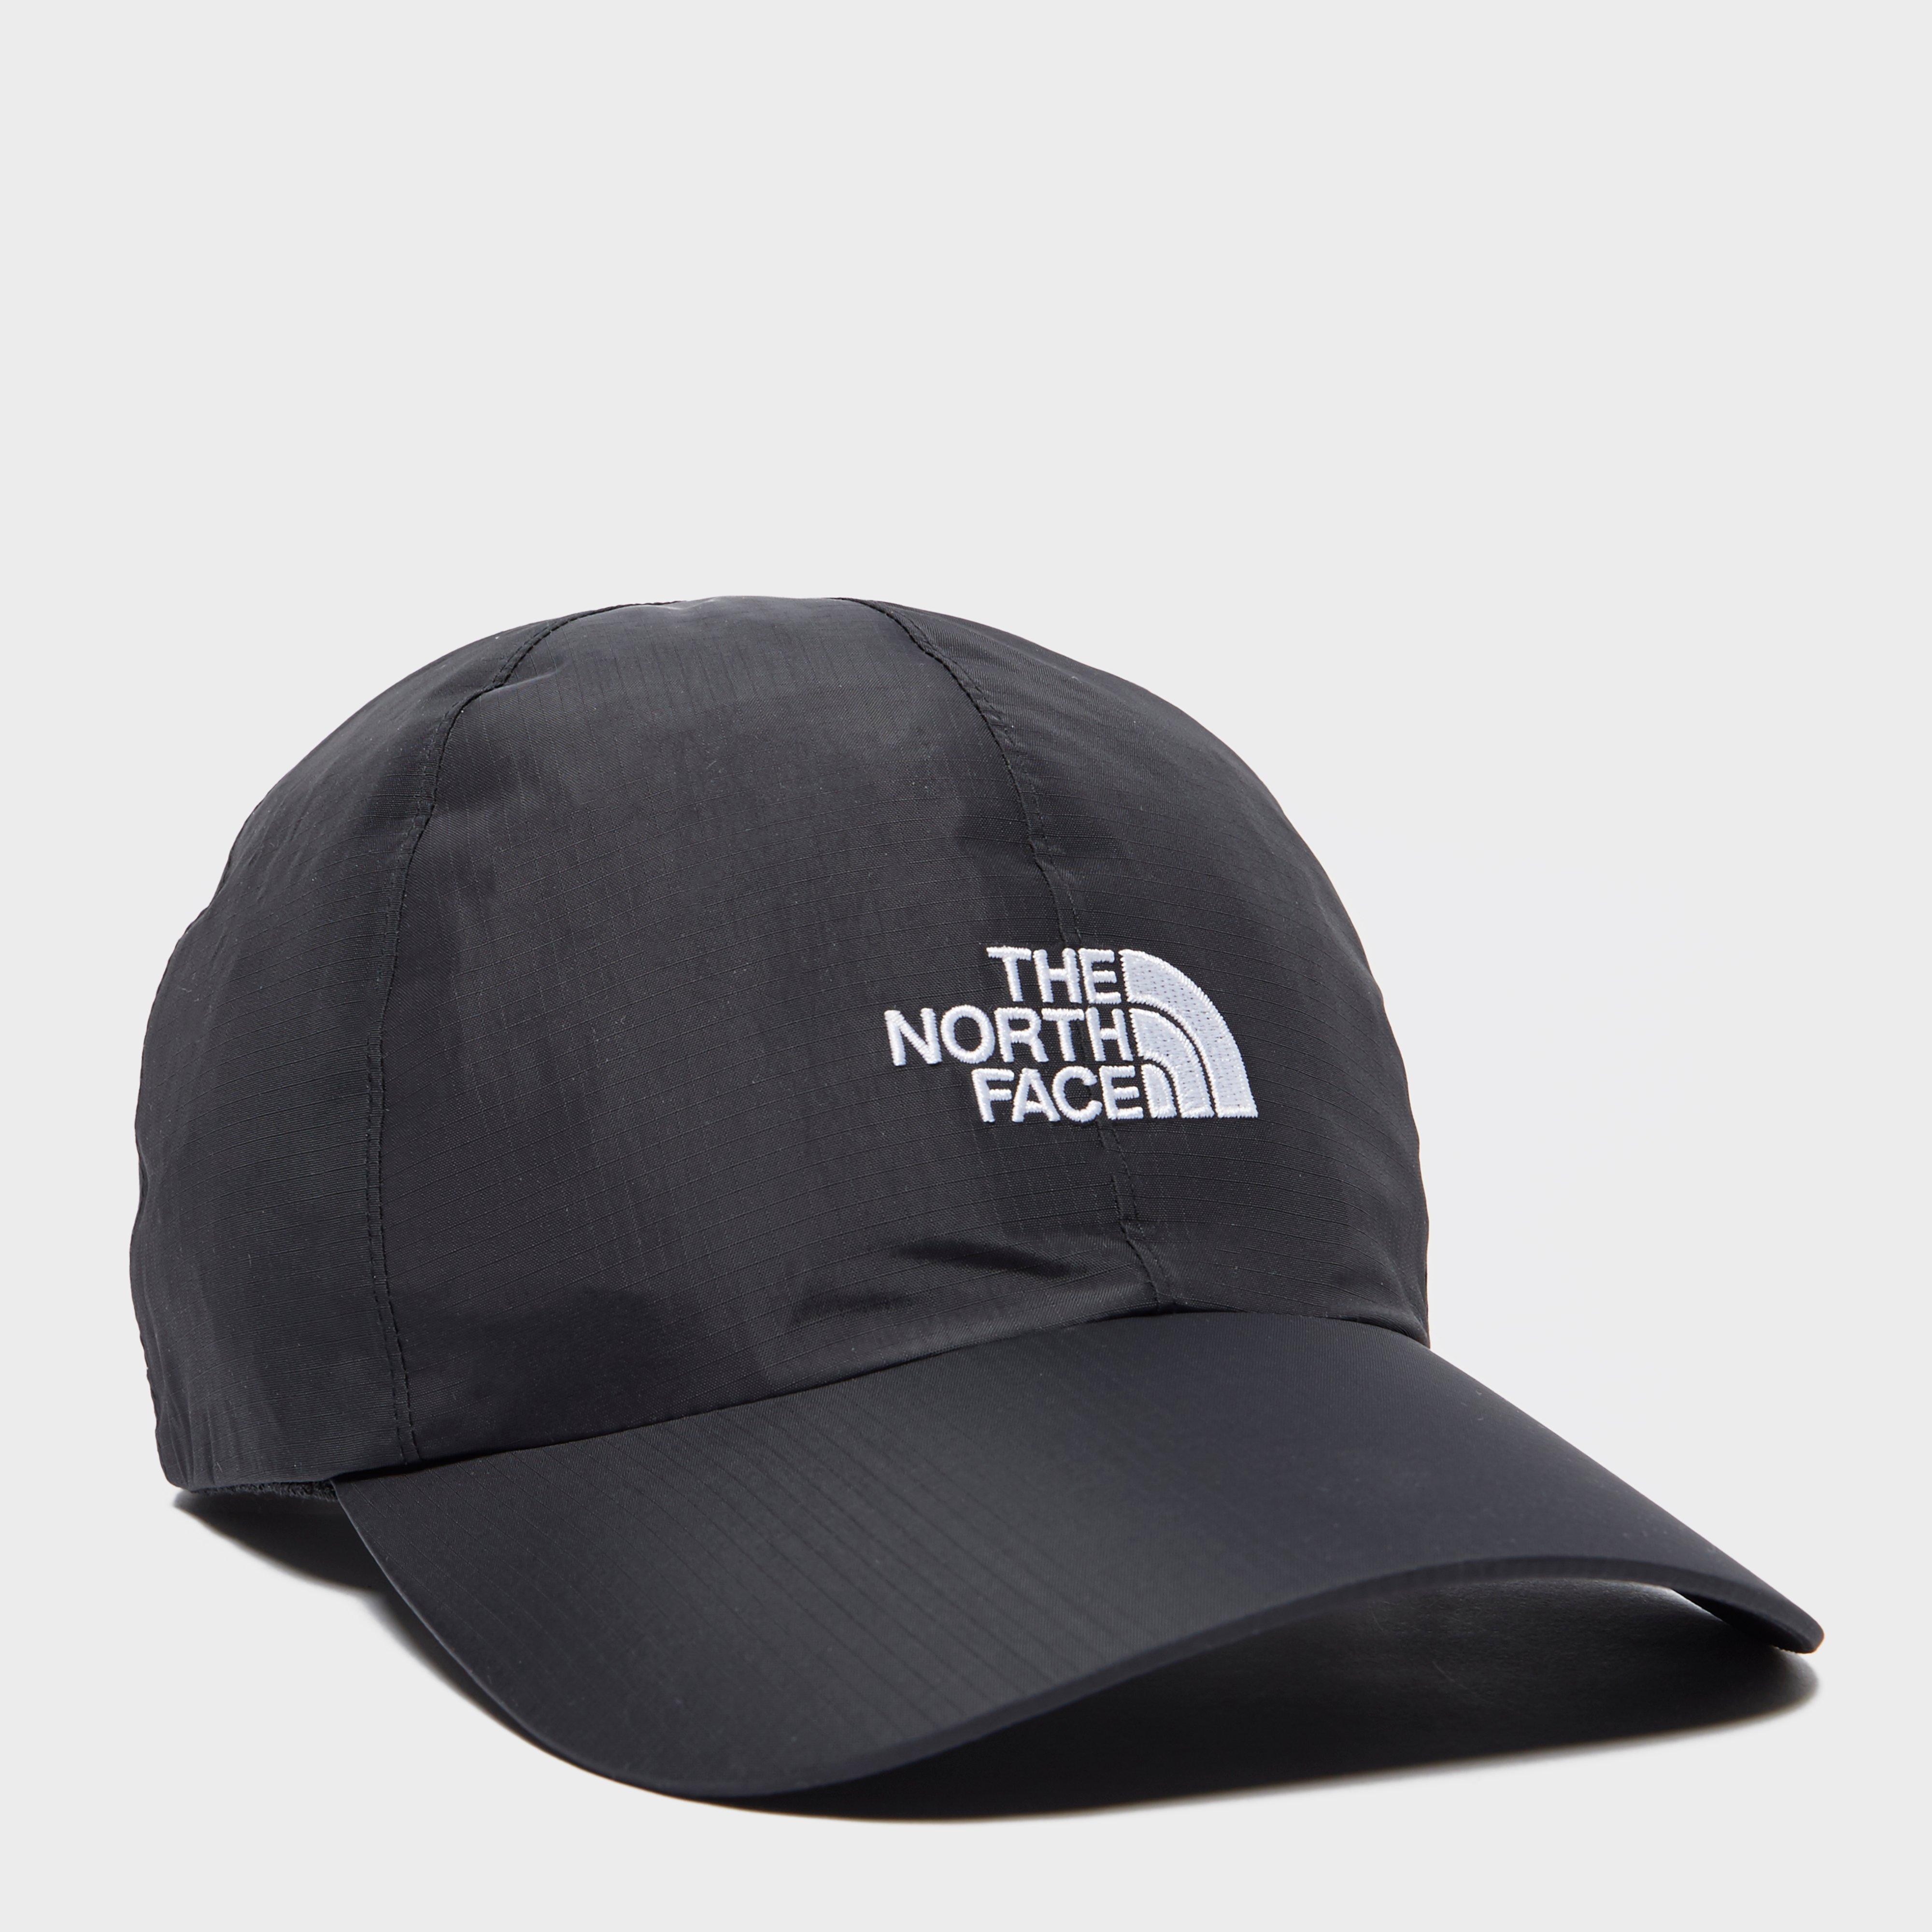 north face dryvent cap